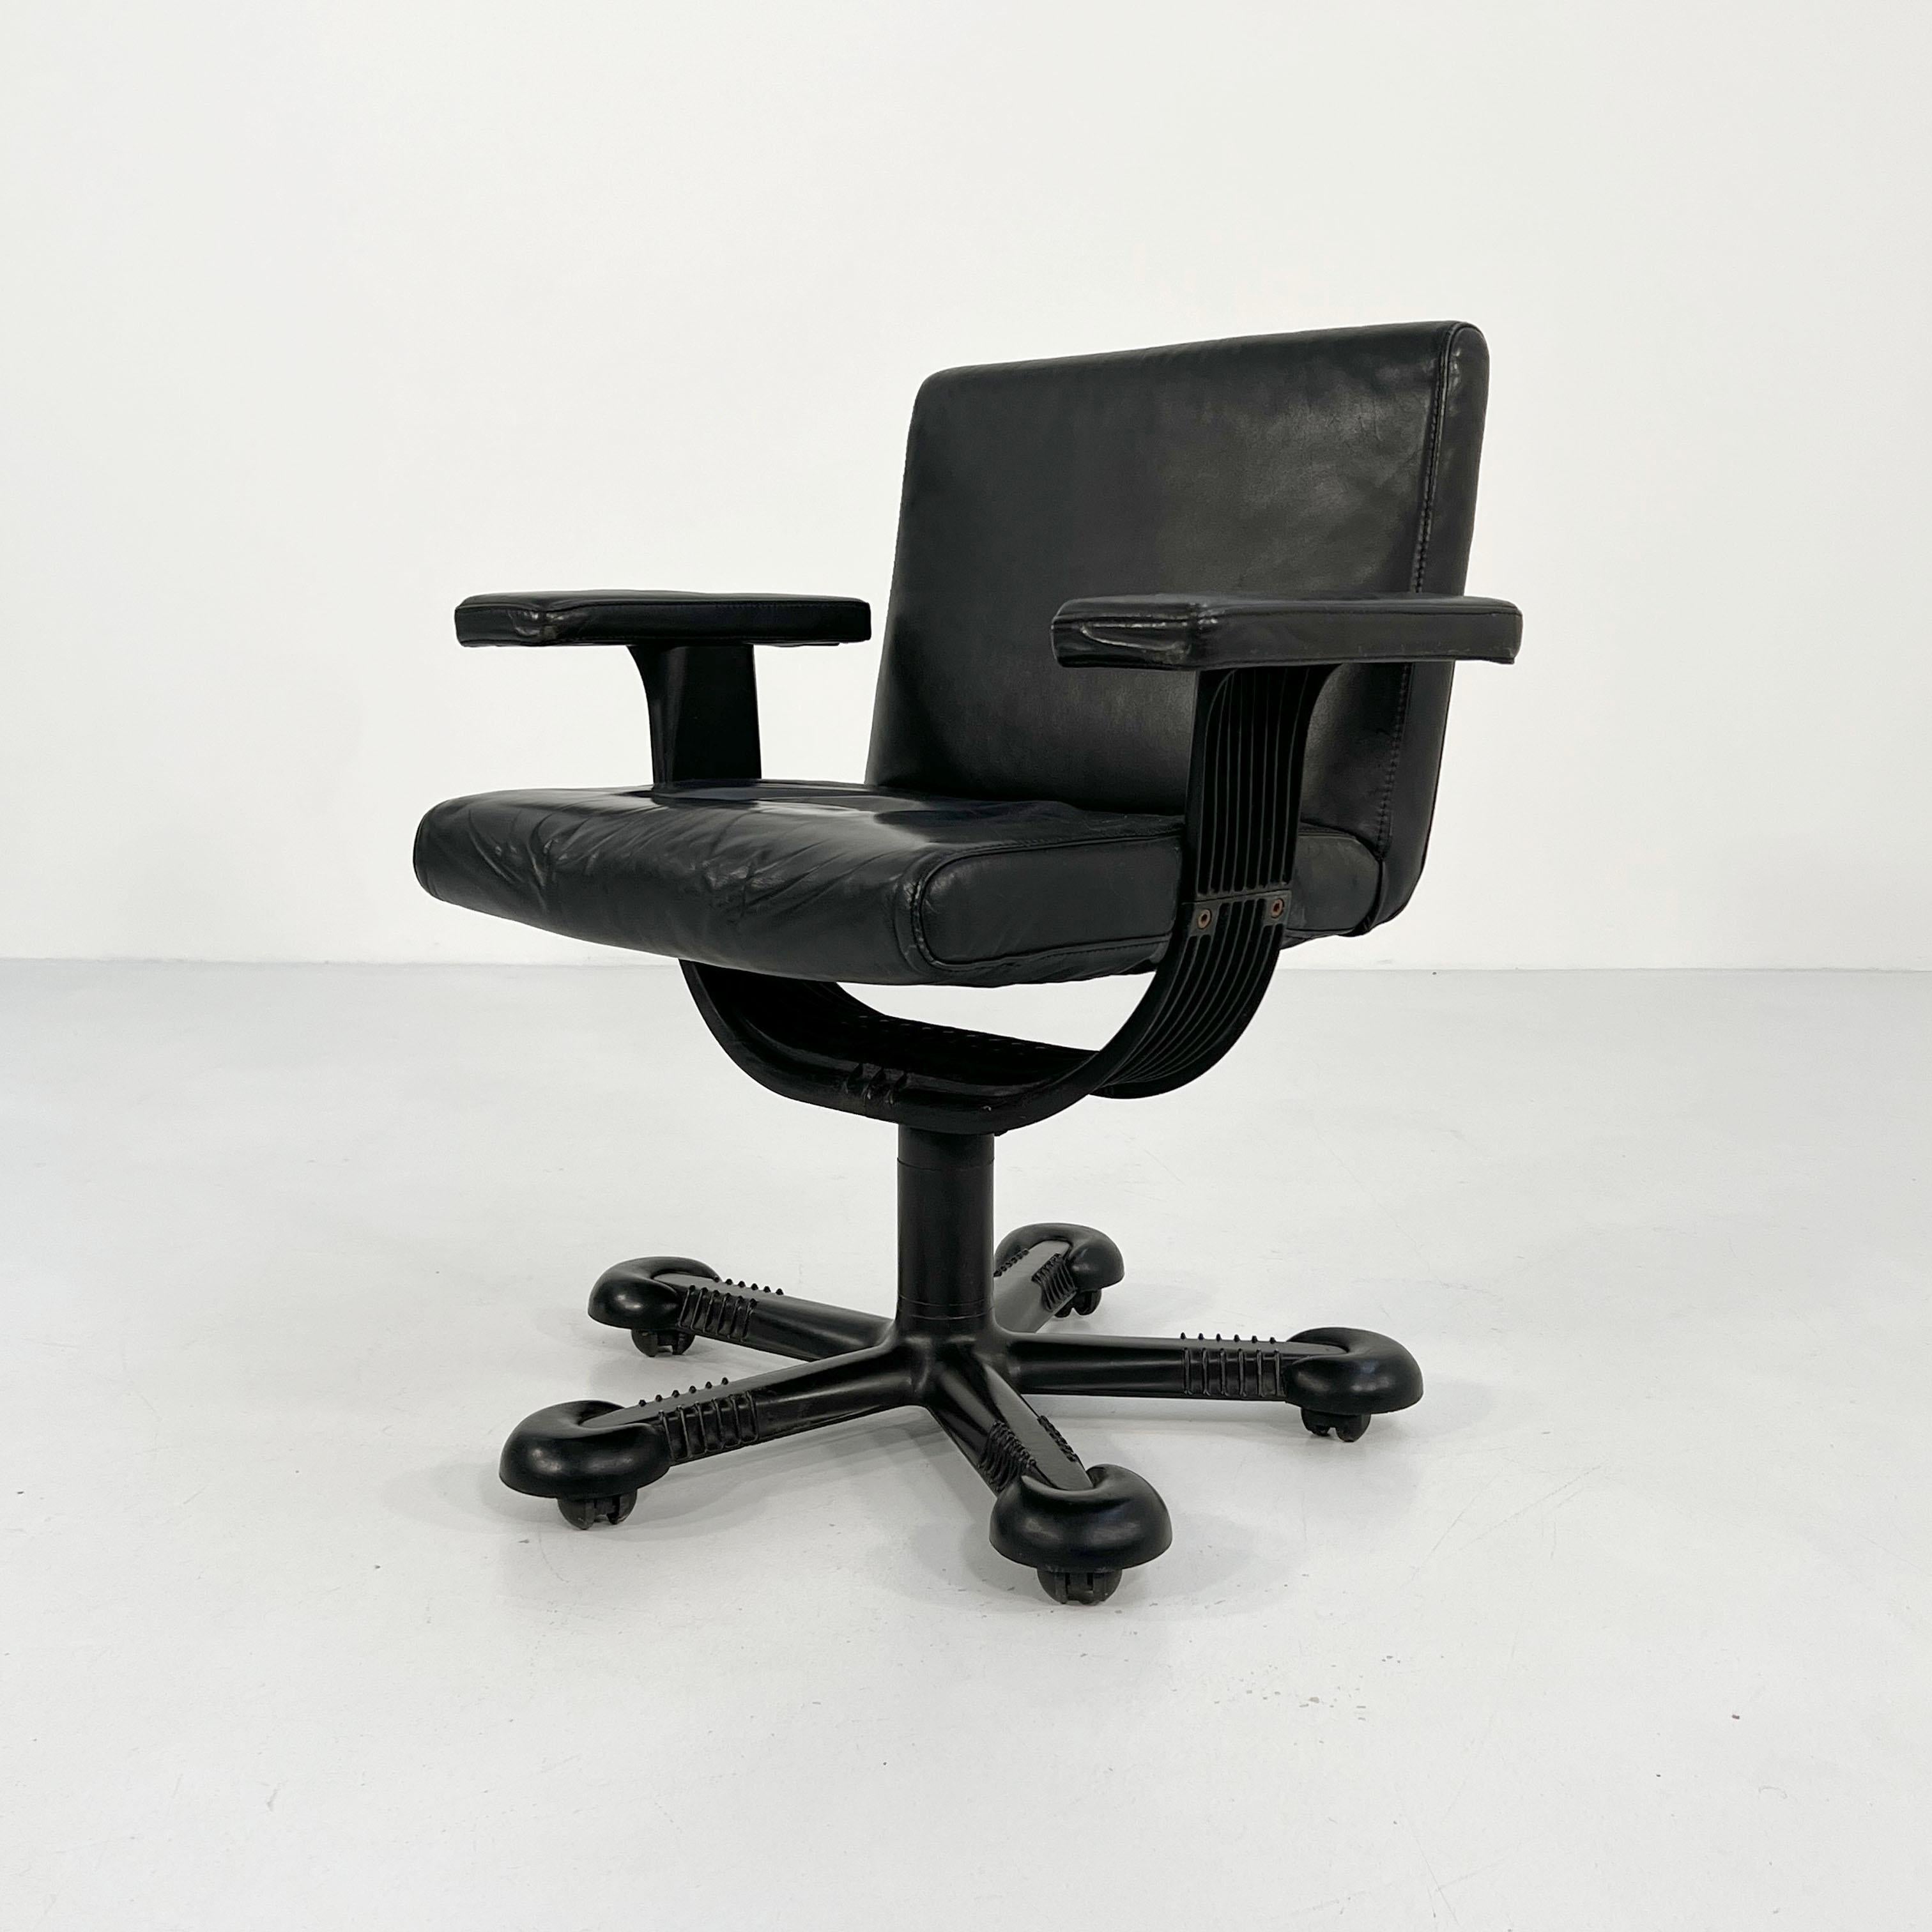 Designer - Afra & Tobia Scarpa
Producer - Molteni
Model - Desk Chair 